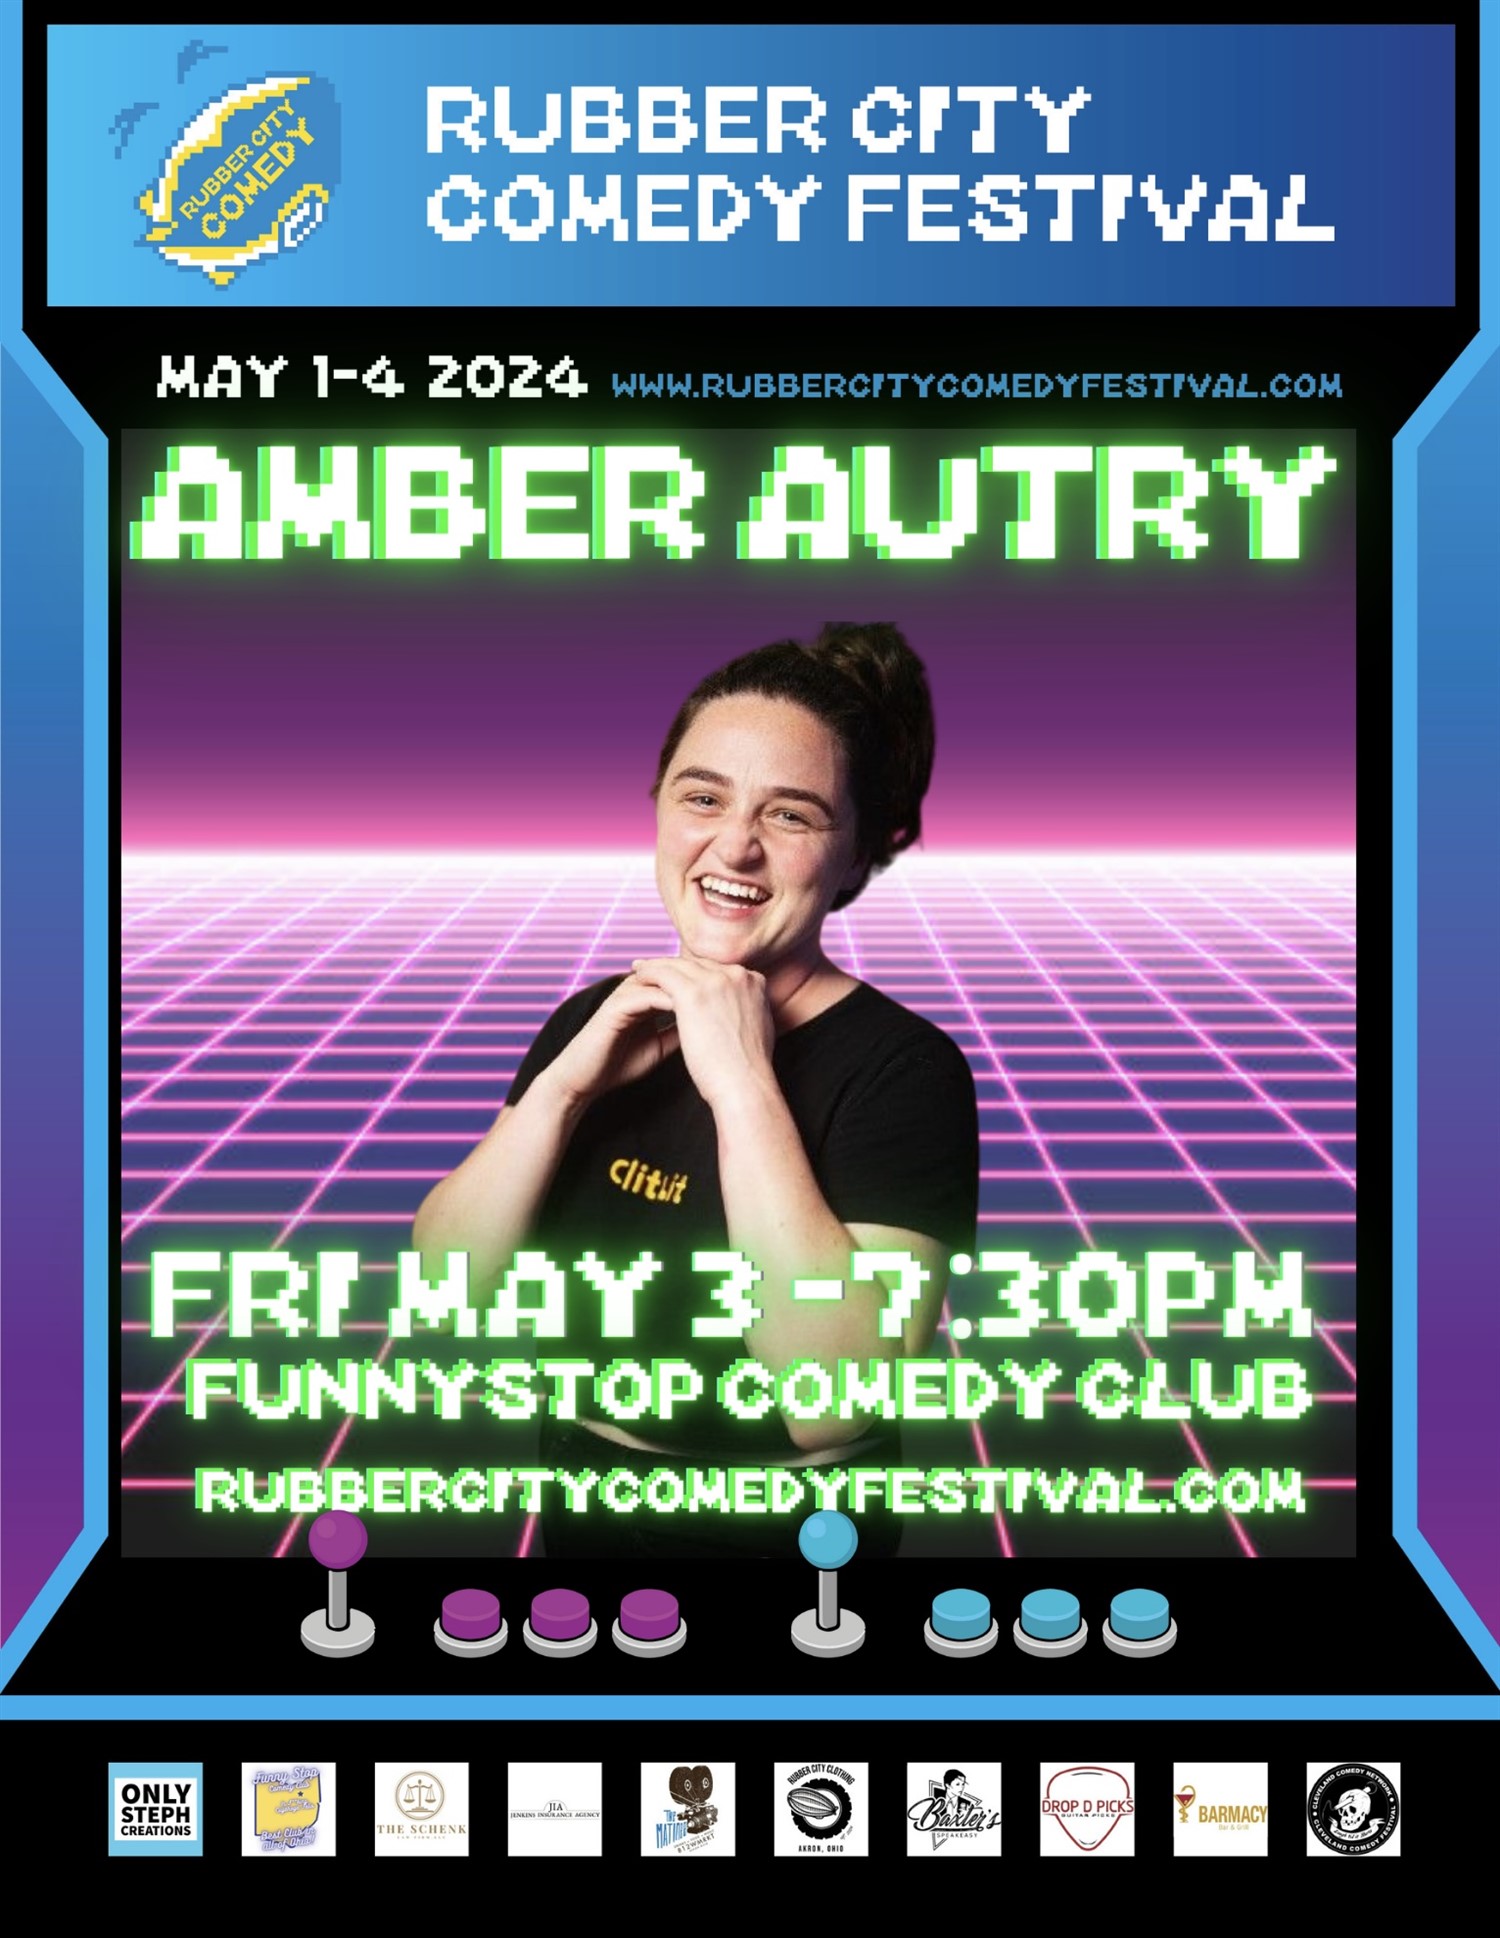 Amber Autry | 7:30 PM | Rubber City Comedy Festival Funny Stop Comedy Club on may. 03, 19:30@Funny Stop Comedy Club - Compra entradas y obtén información enFunny Stop funnystop.online